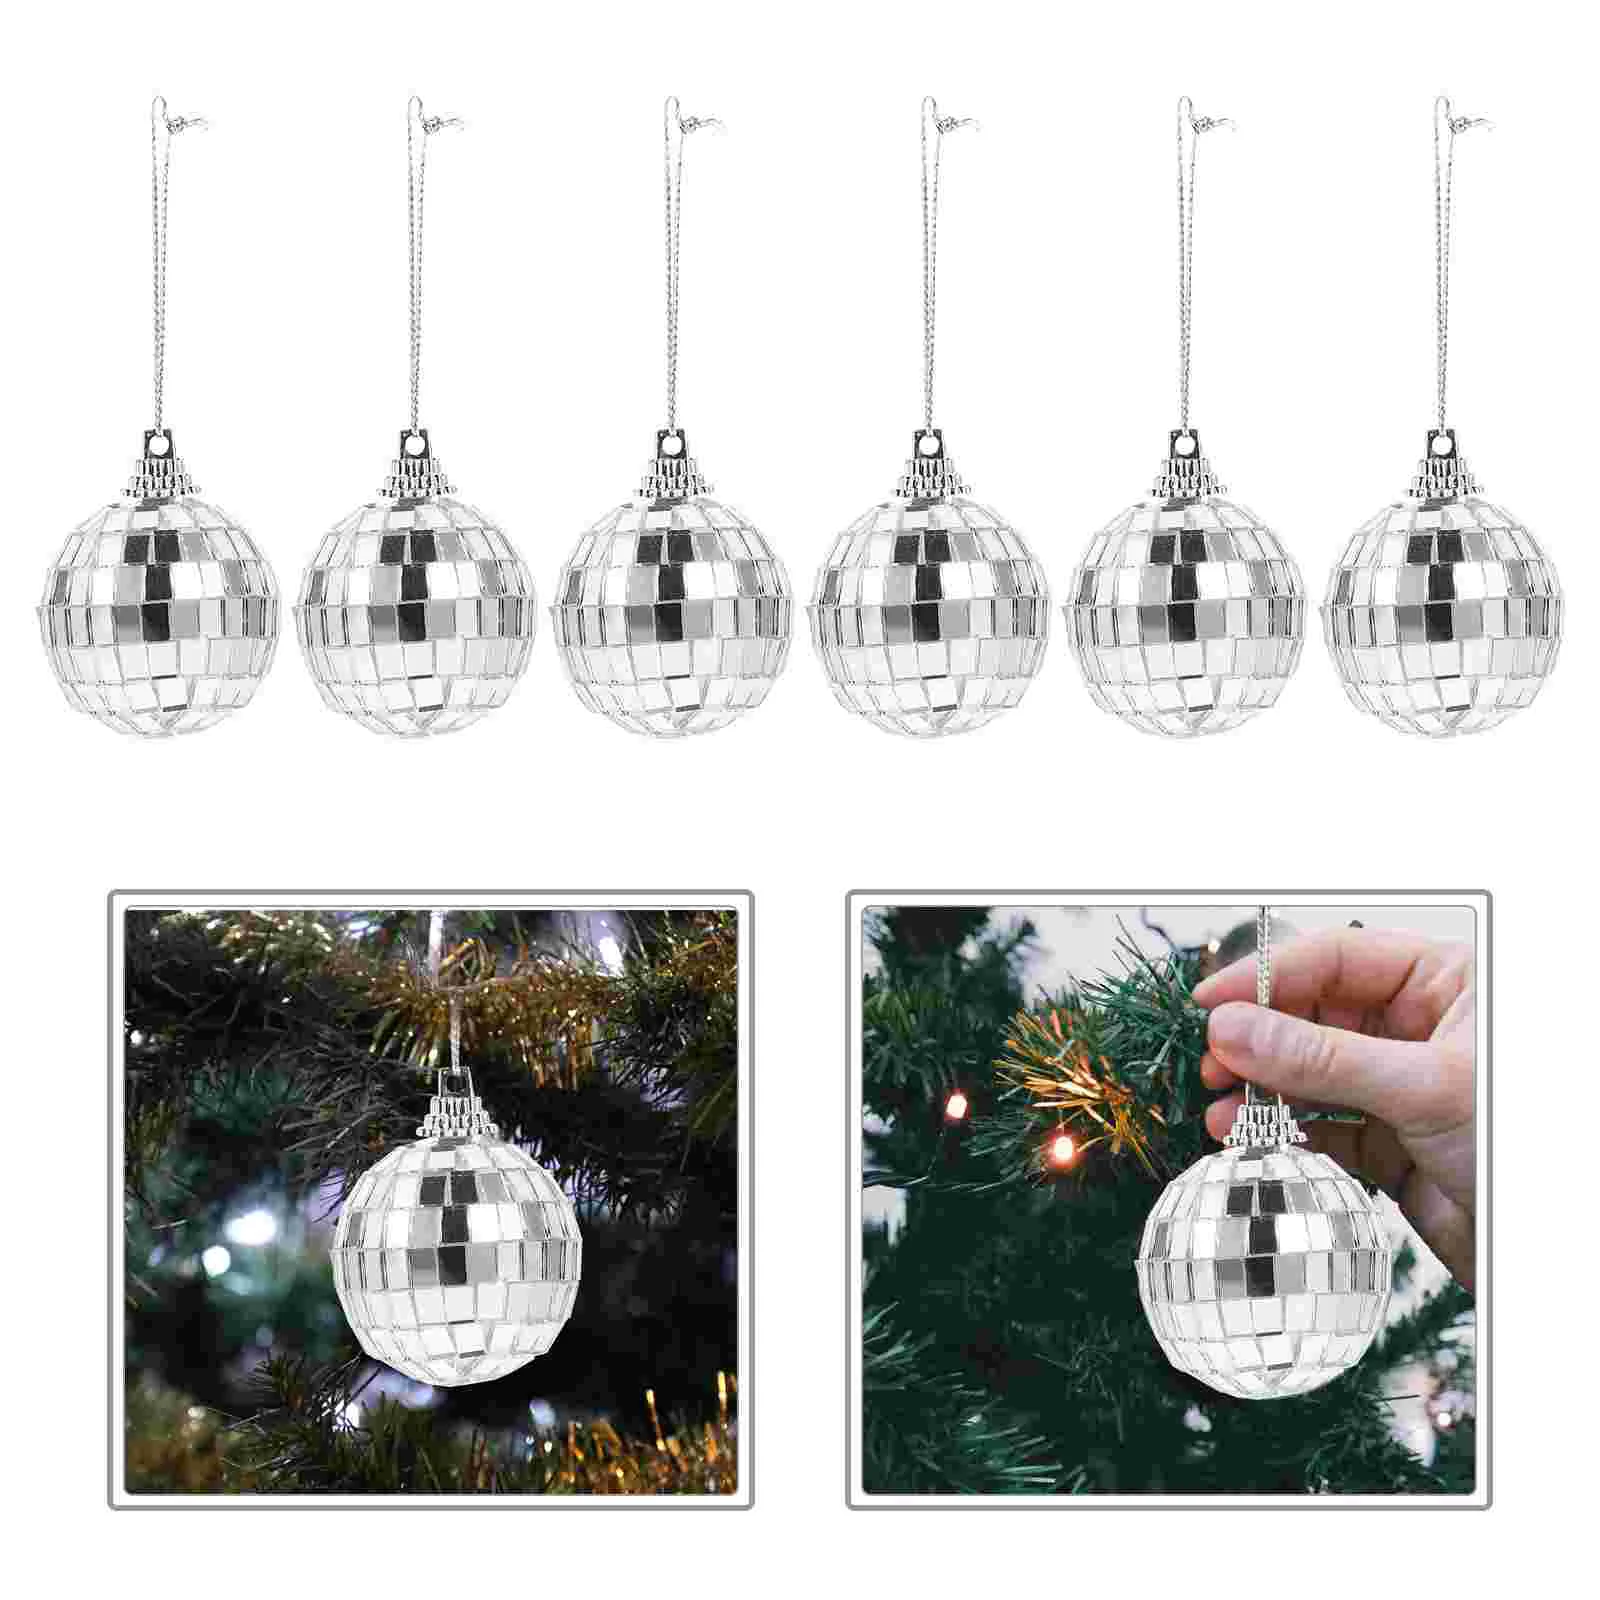 

Светоотражающий шар для дискотеки 6 шт., зеркальный шар с зеркальной поверхностью, Рождественское украшение, светоотражающий Диско-Шар из пенопласта, мини-шар для декора